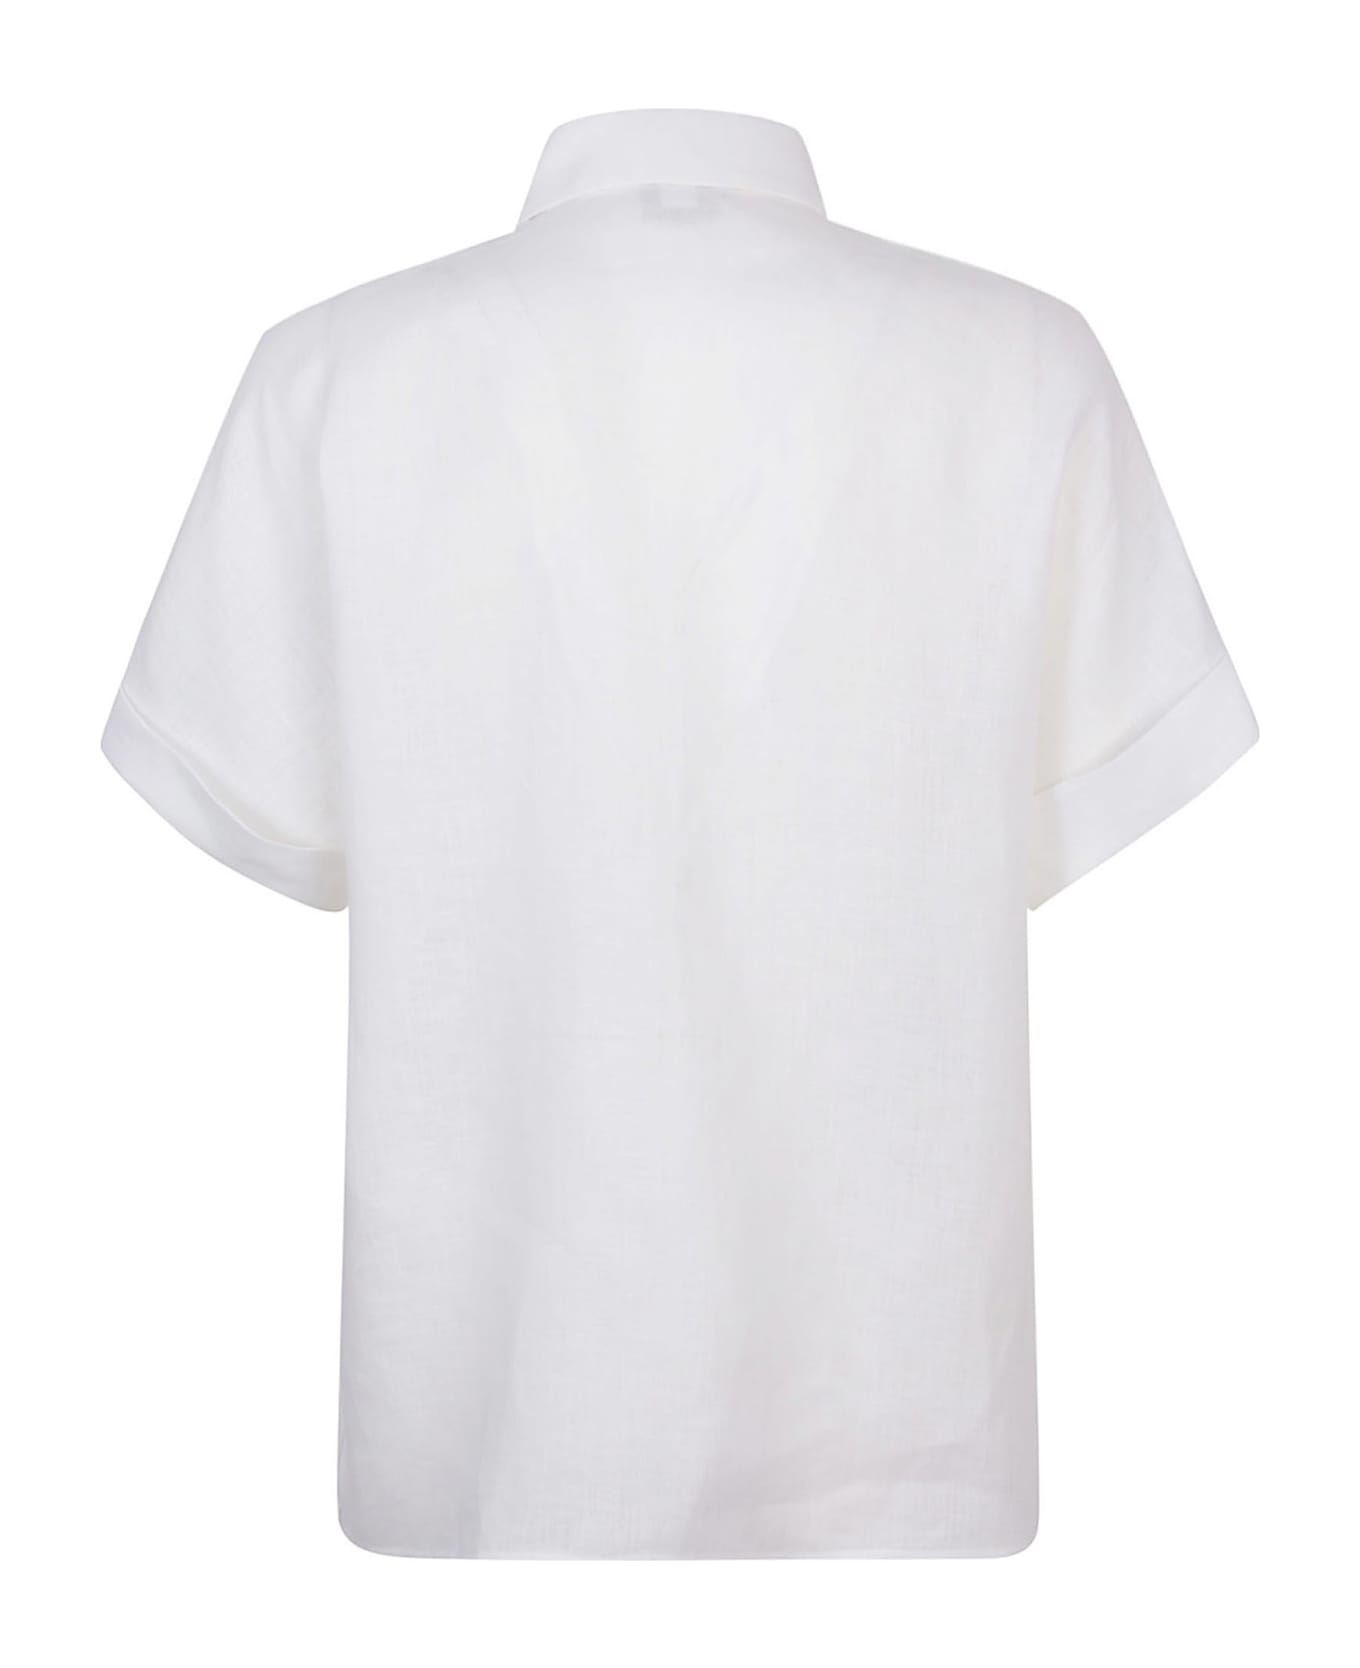 Eleventy Shirts White - White